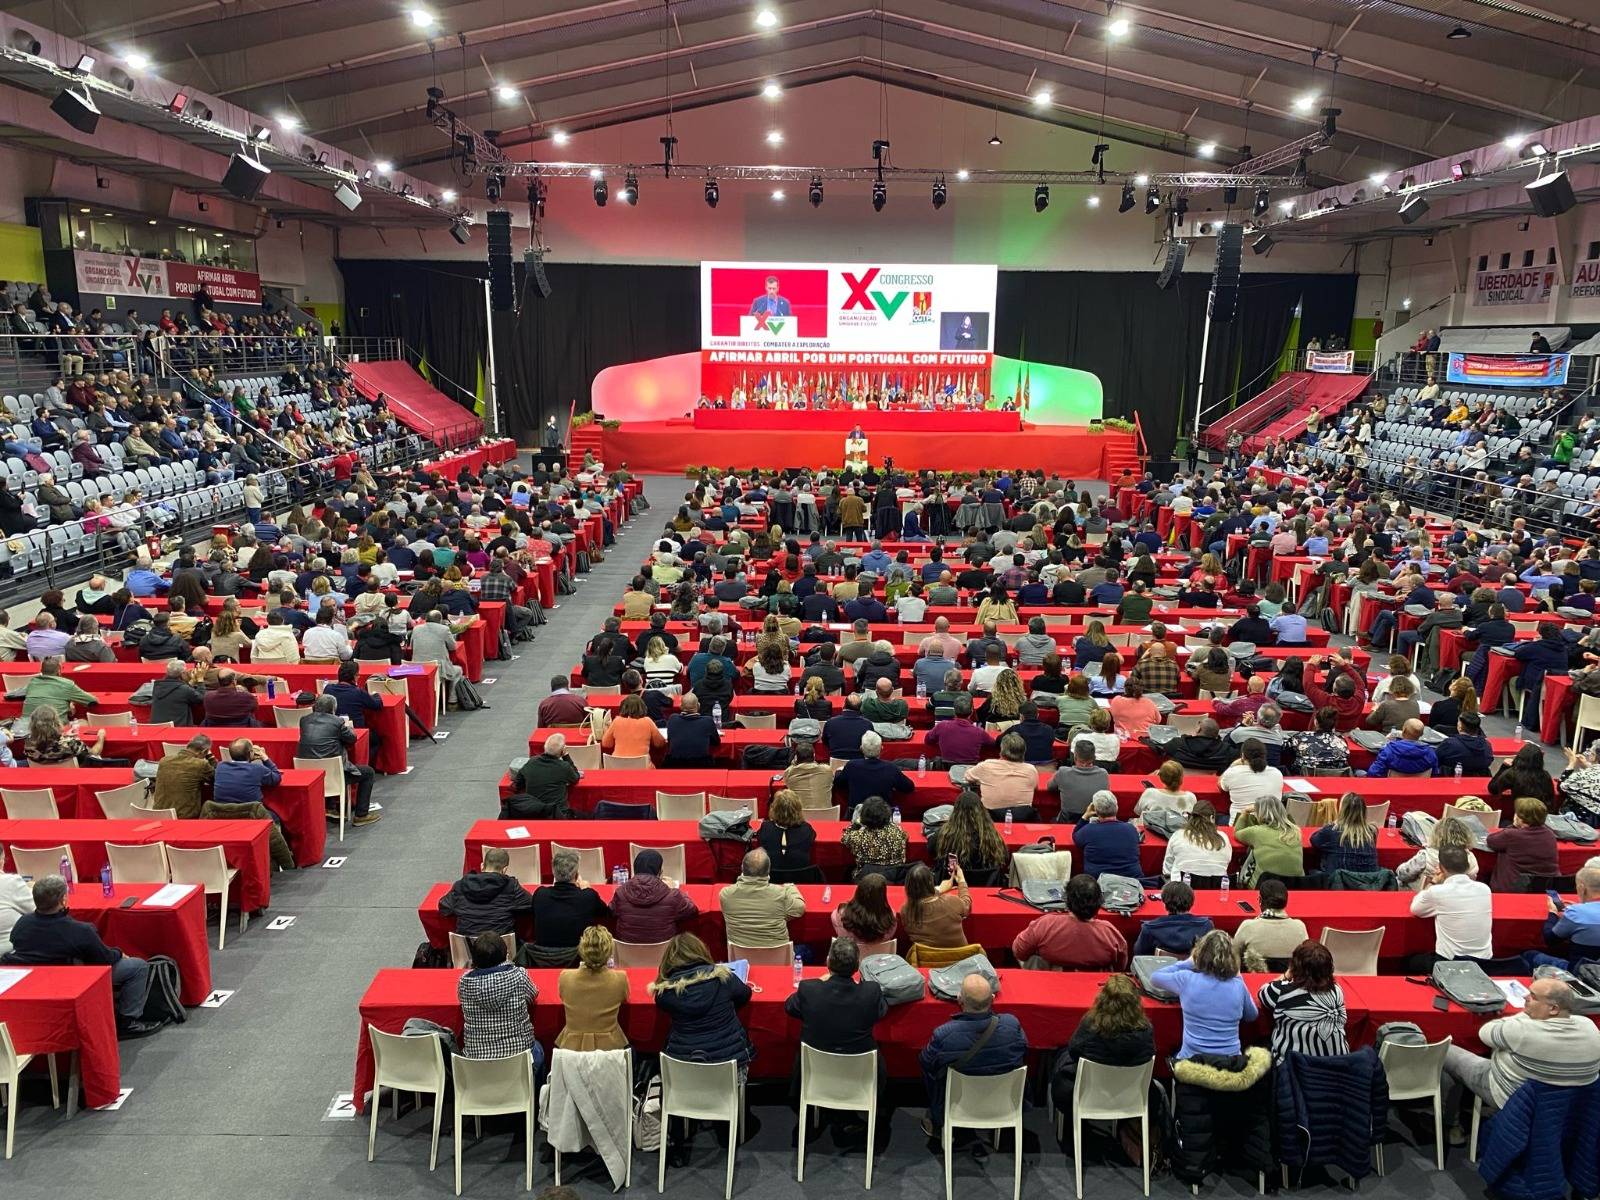 Intersindical Valenciana participa en el XV Congrés de la Confederação Geral de Trabalhadores de Portugal (CGTP-IN)